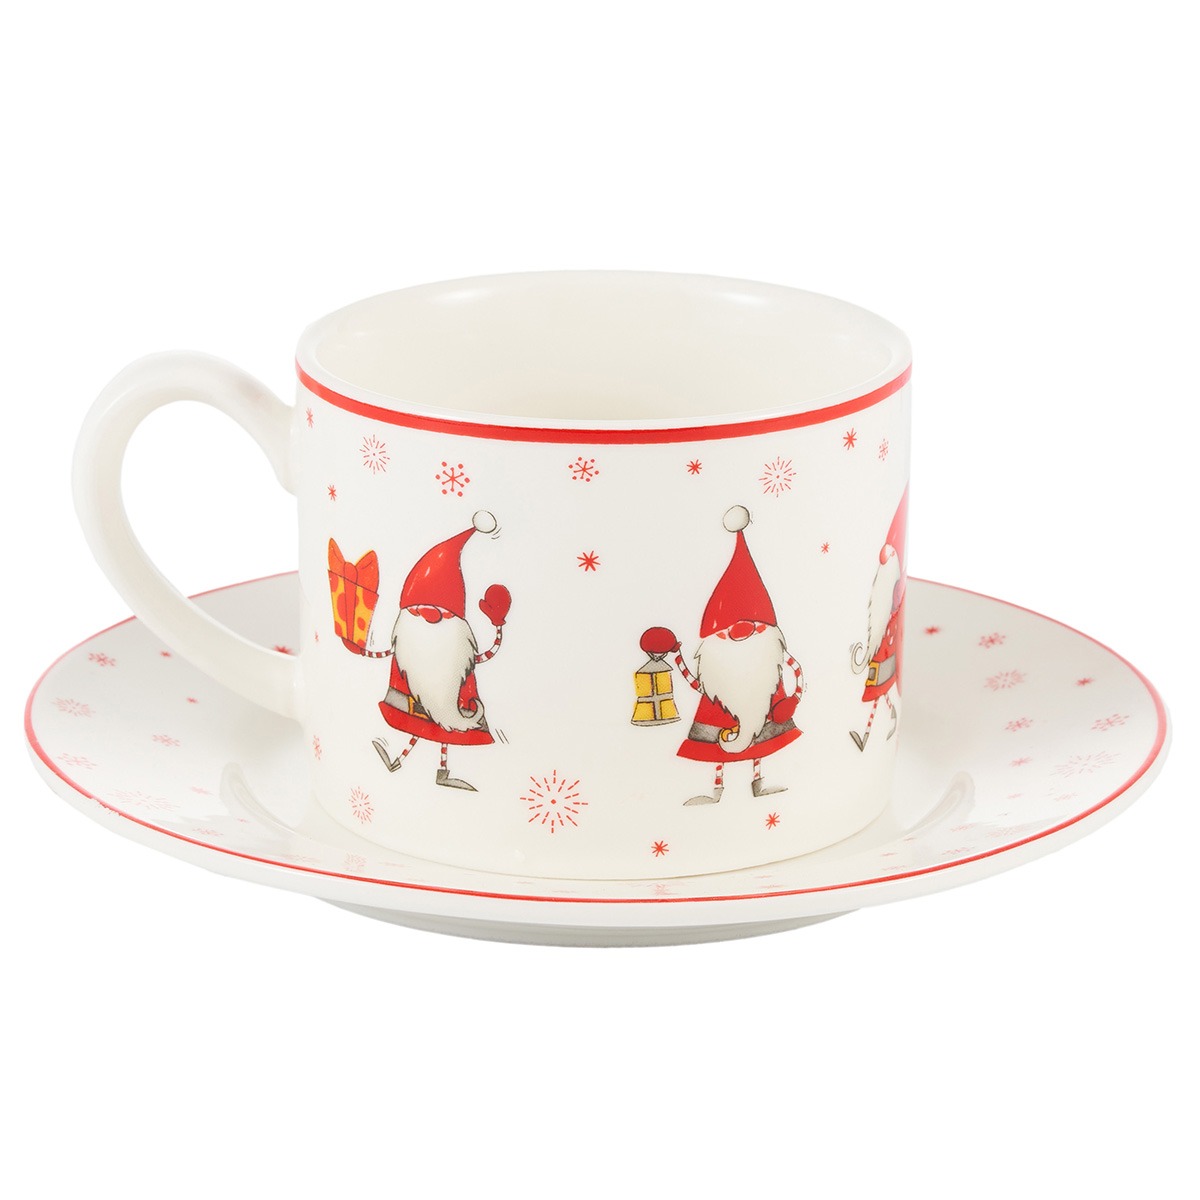 Чайная пара Gipfel Christmas фарфор белый с красным чашка 250 мл, блюдце 14 см, цвет красный - фото 2